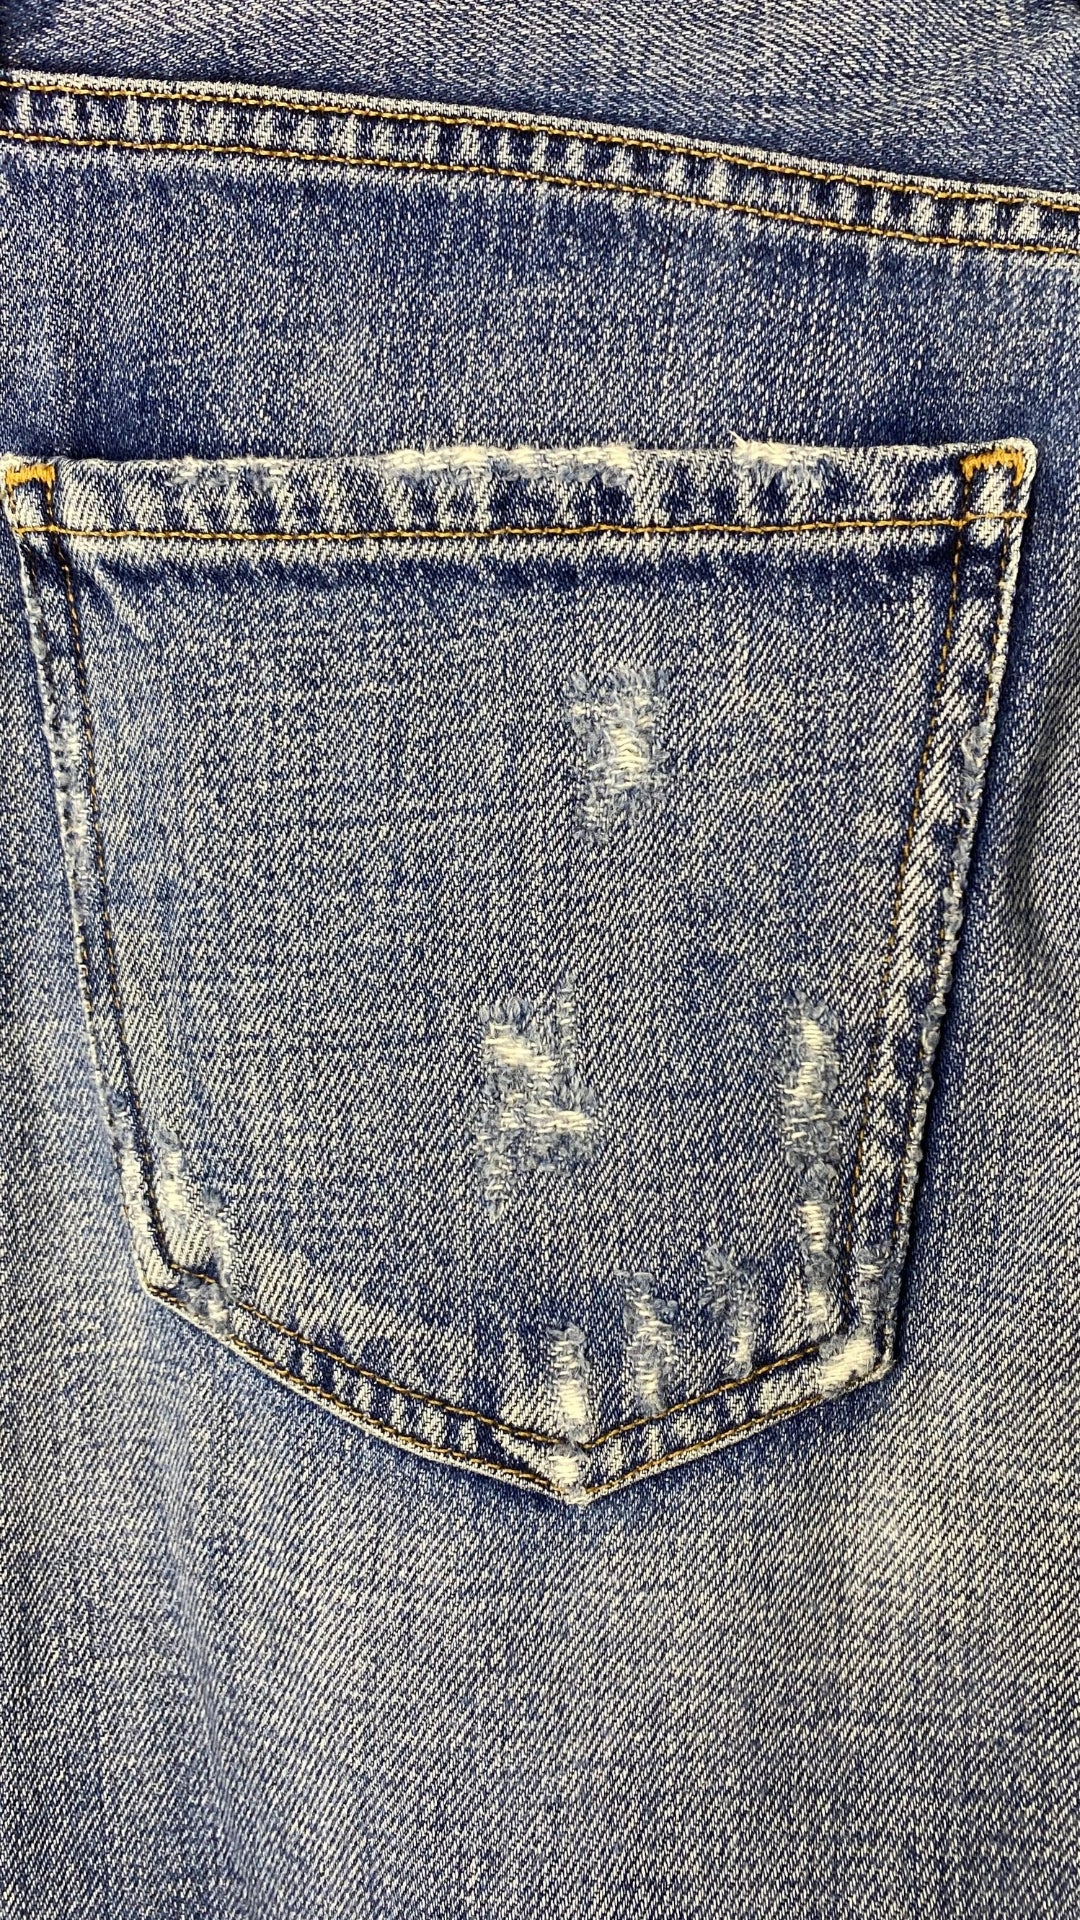 Jeans ajusté taille haute Citizens of Humanity, taille 23. Vue de la poche arrière.